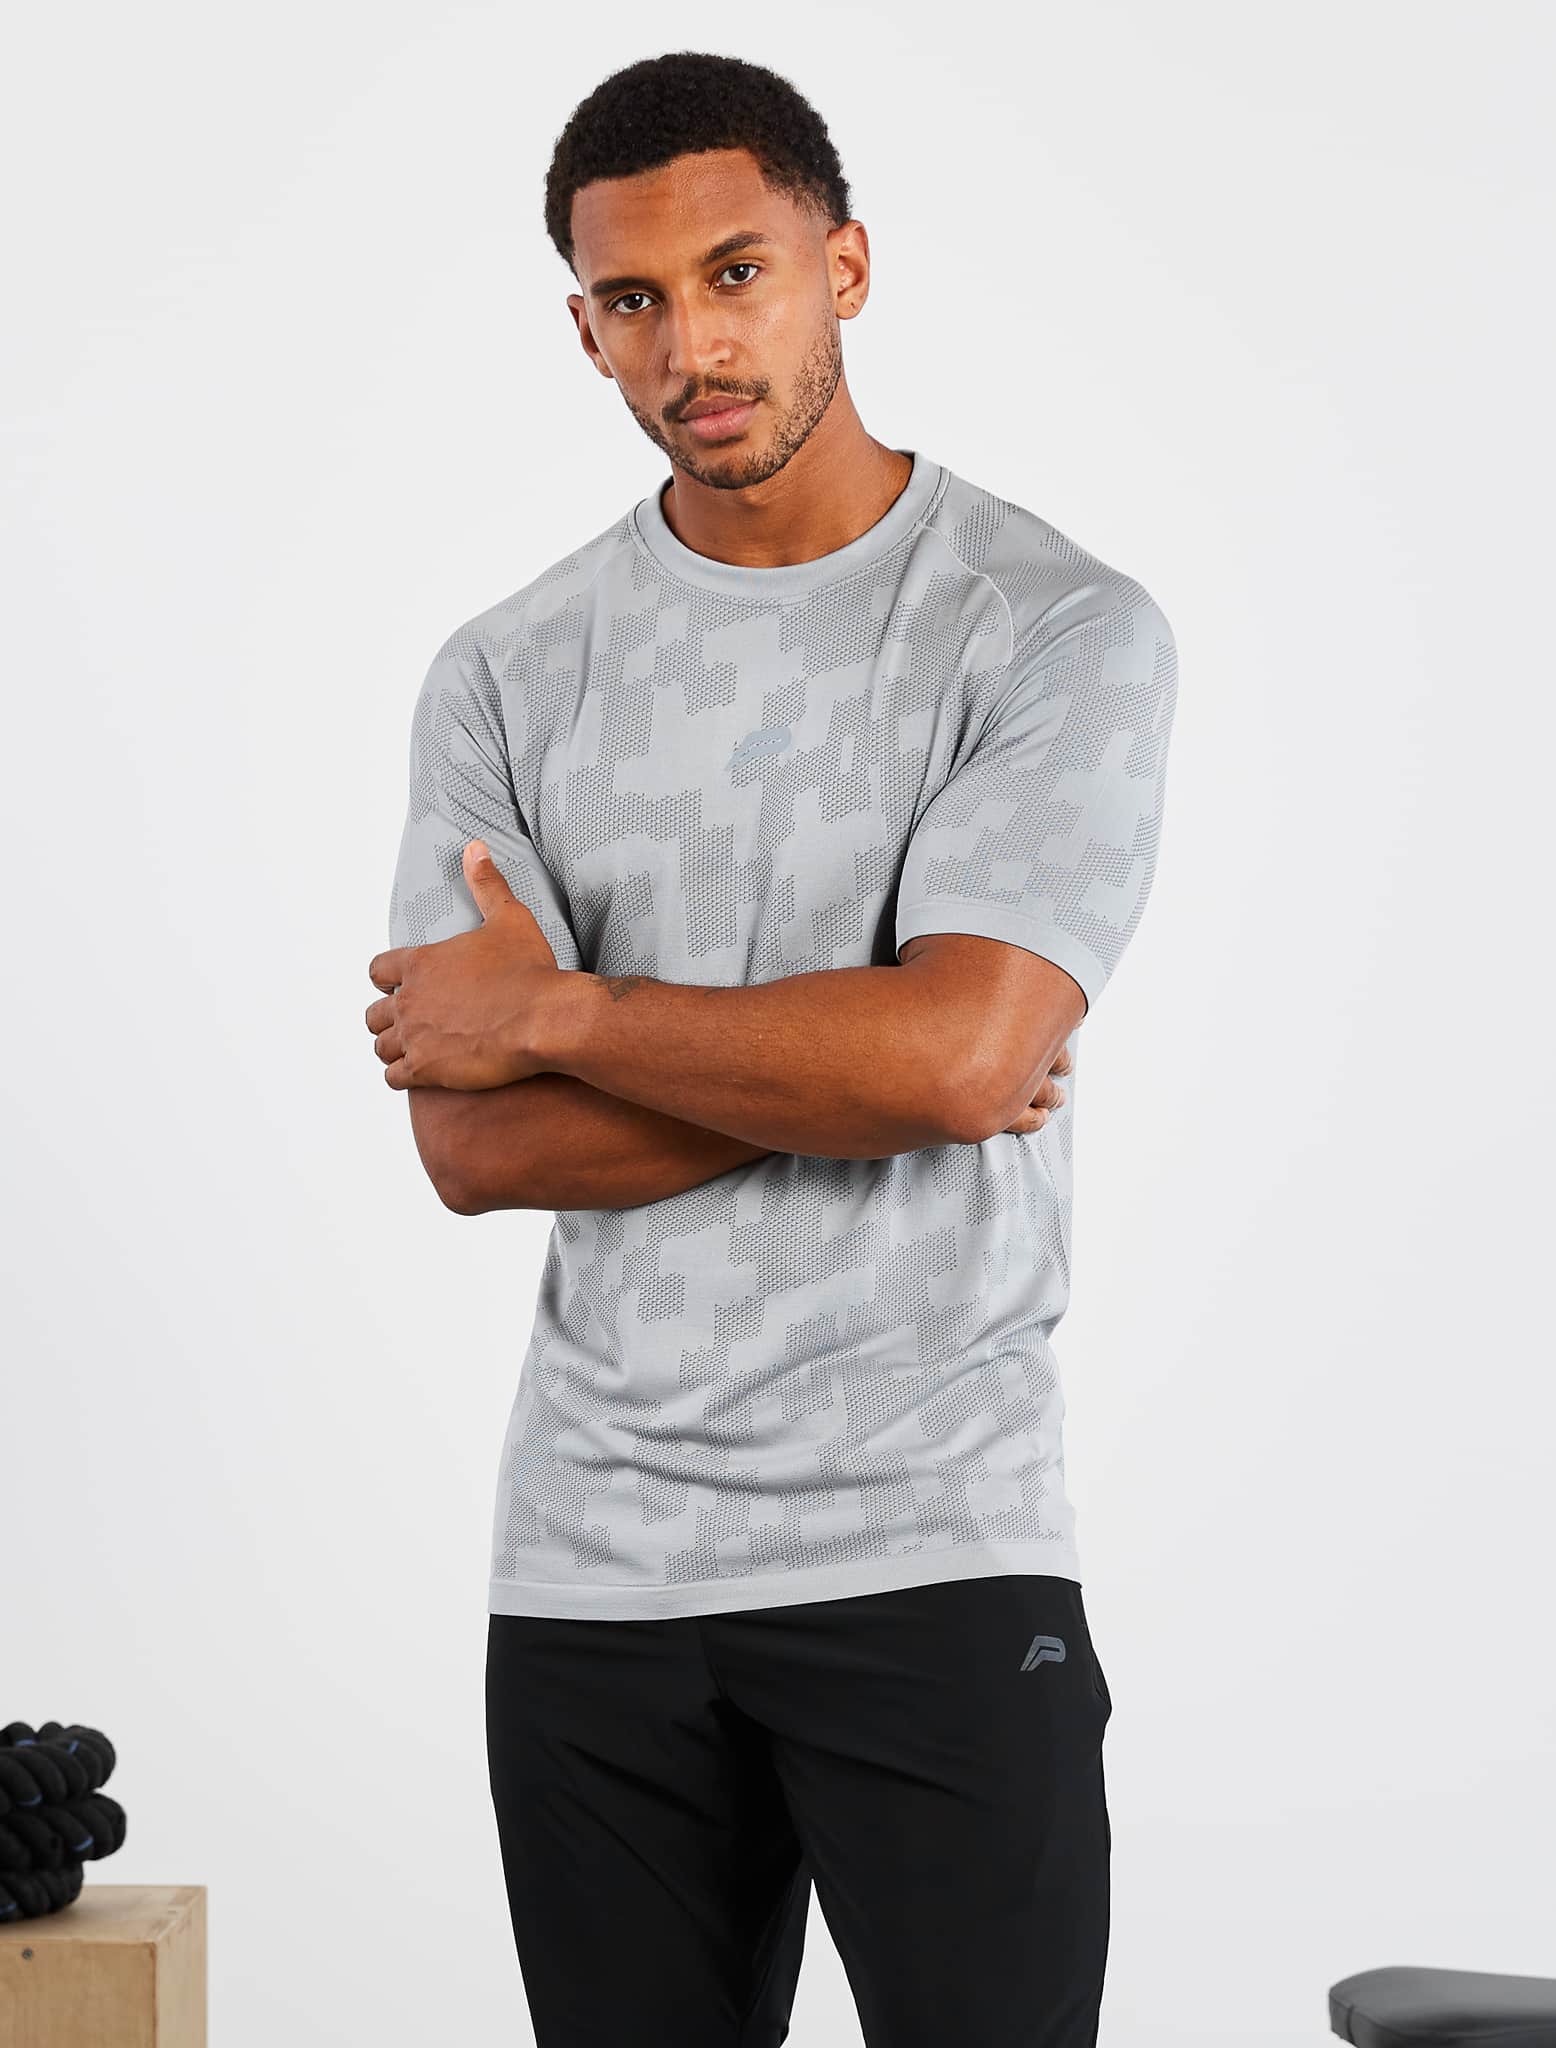 Camo Seamless T-Shirt / Grey Pursue Fitness 2